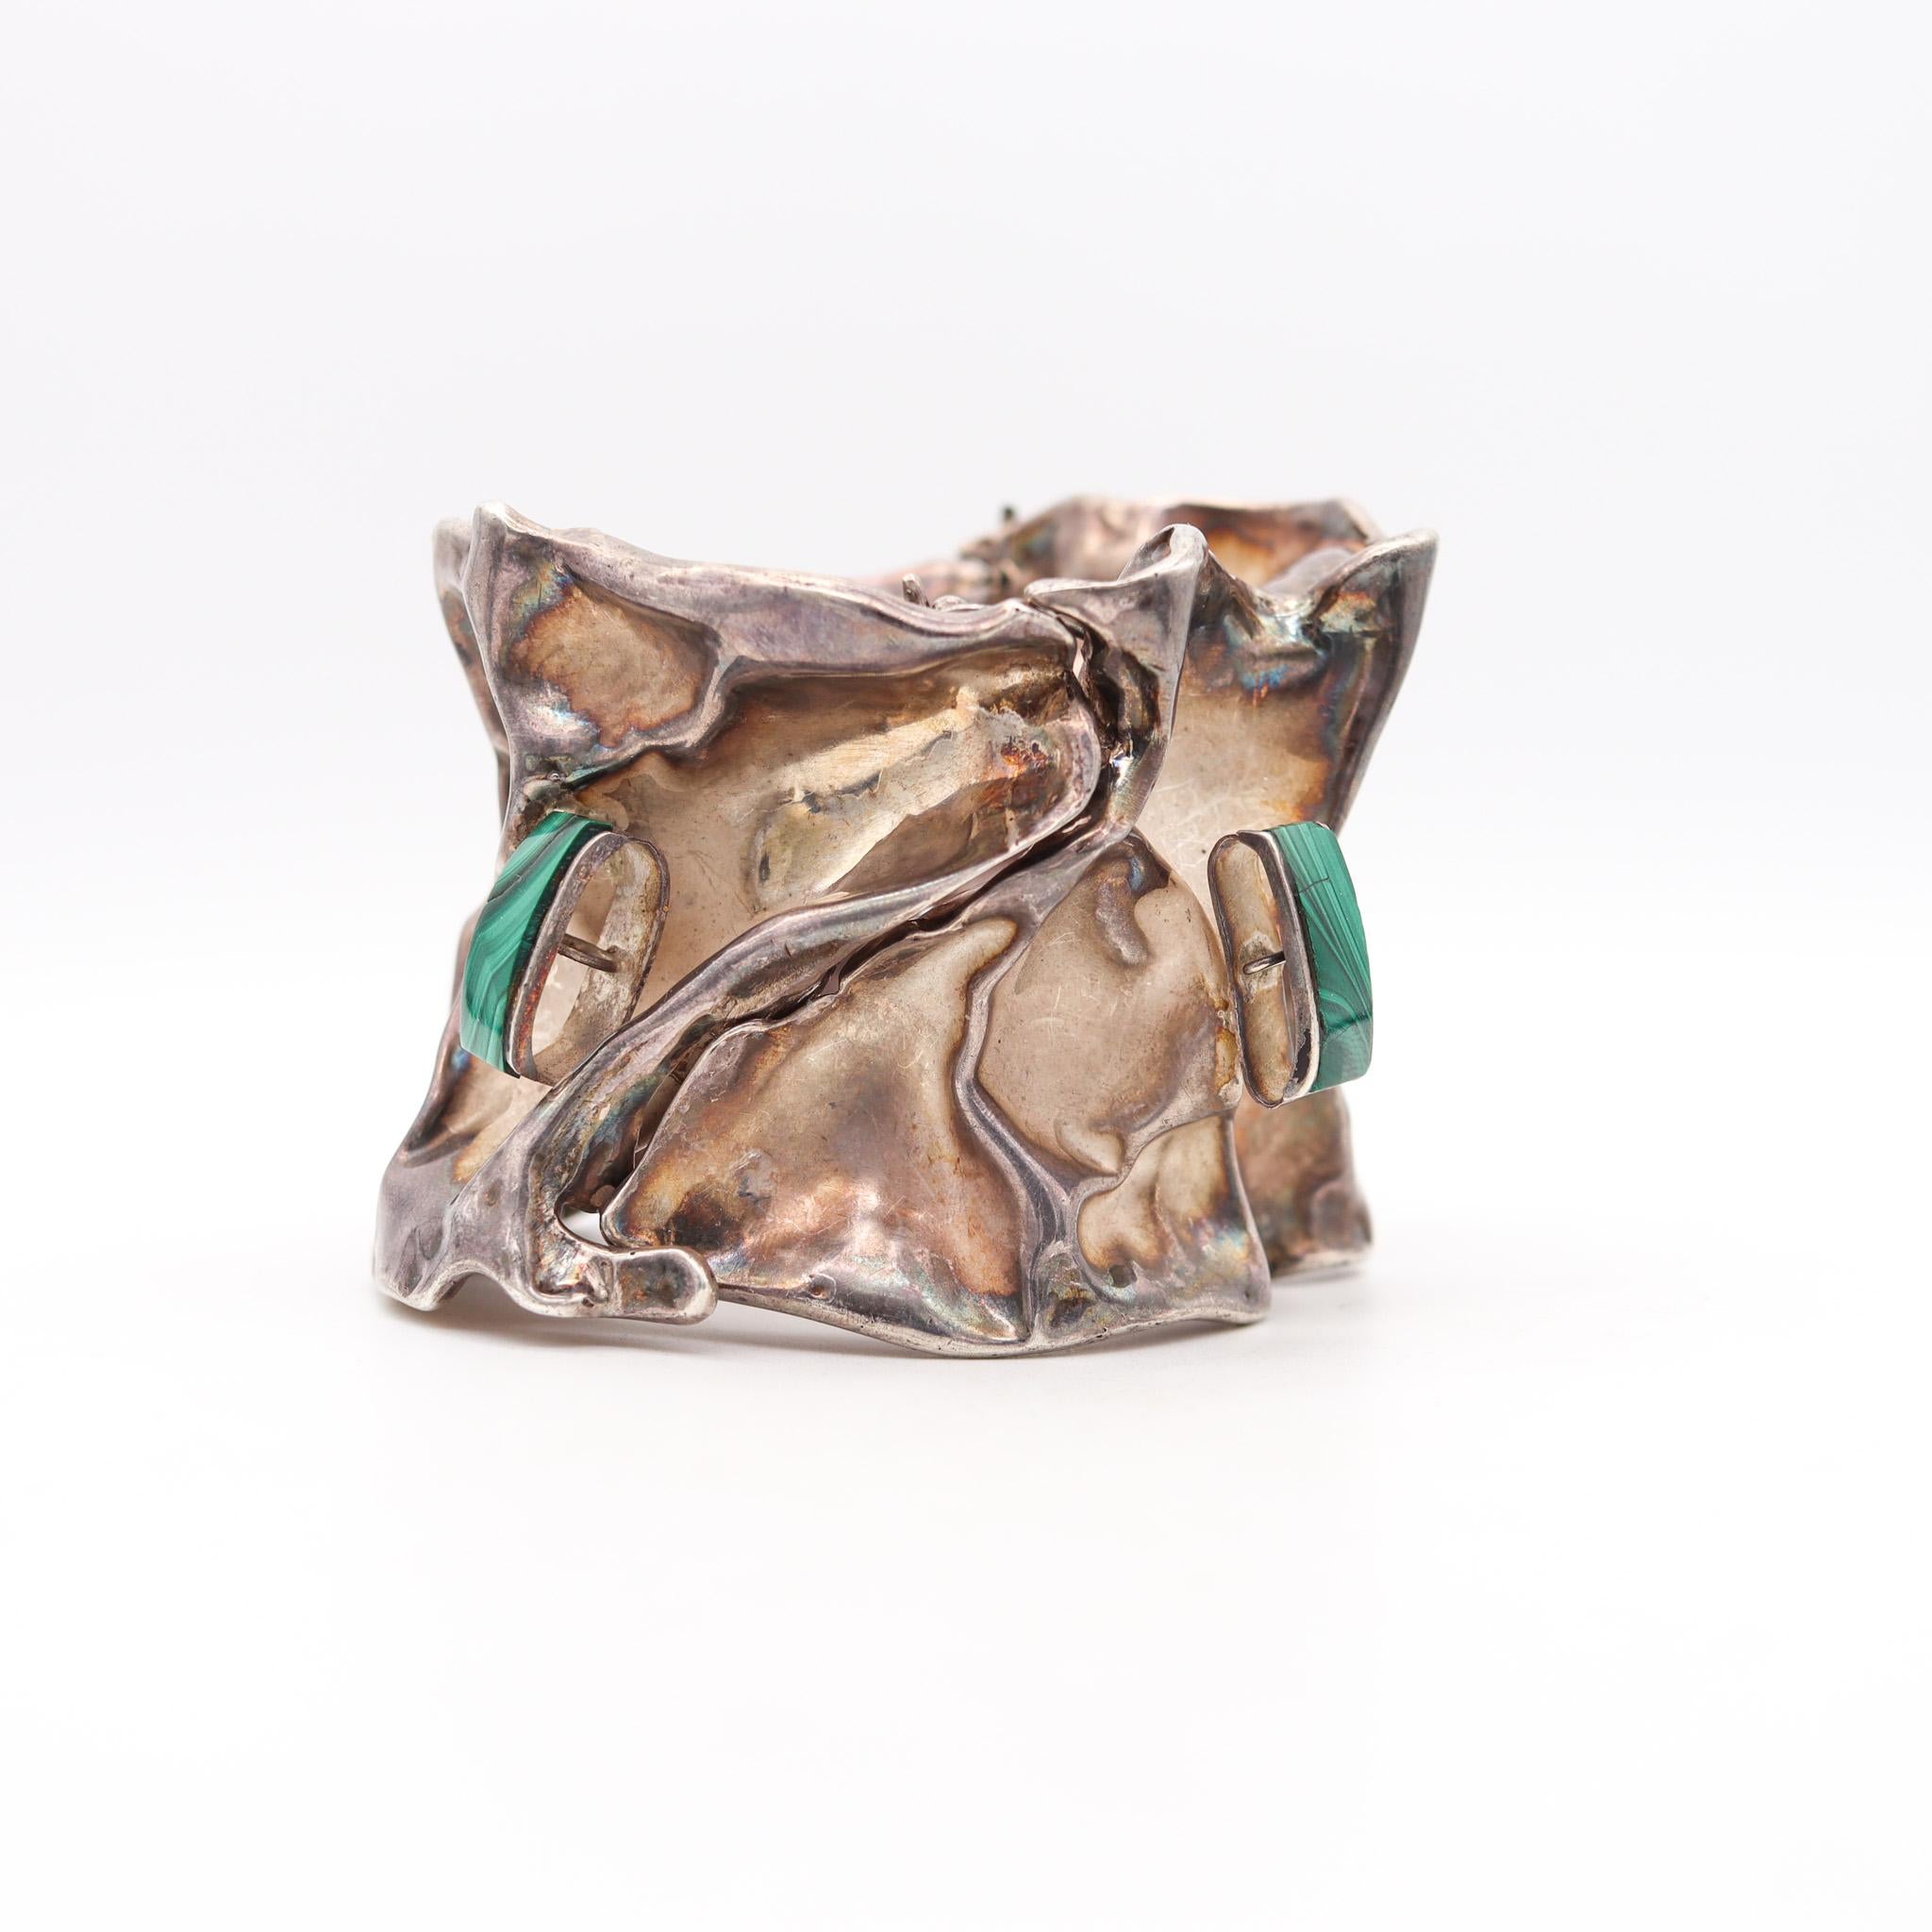 Organischer Armreif, entworfen von Misty Taylor.

Wunderschönes, einzigartiges Armband, das in Taxco, Mexiko, von der Silberschmiedin Misty Taylor in den 1970er Jahren geschaffen wurde. Dieses ungewöhnliche skulpturale Armband wurde aus